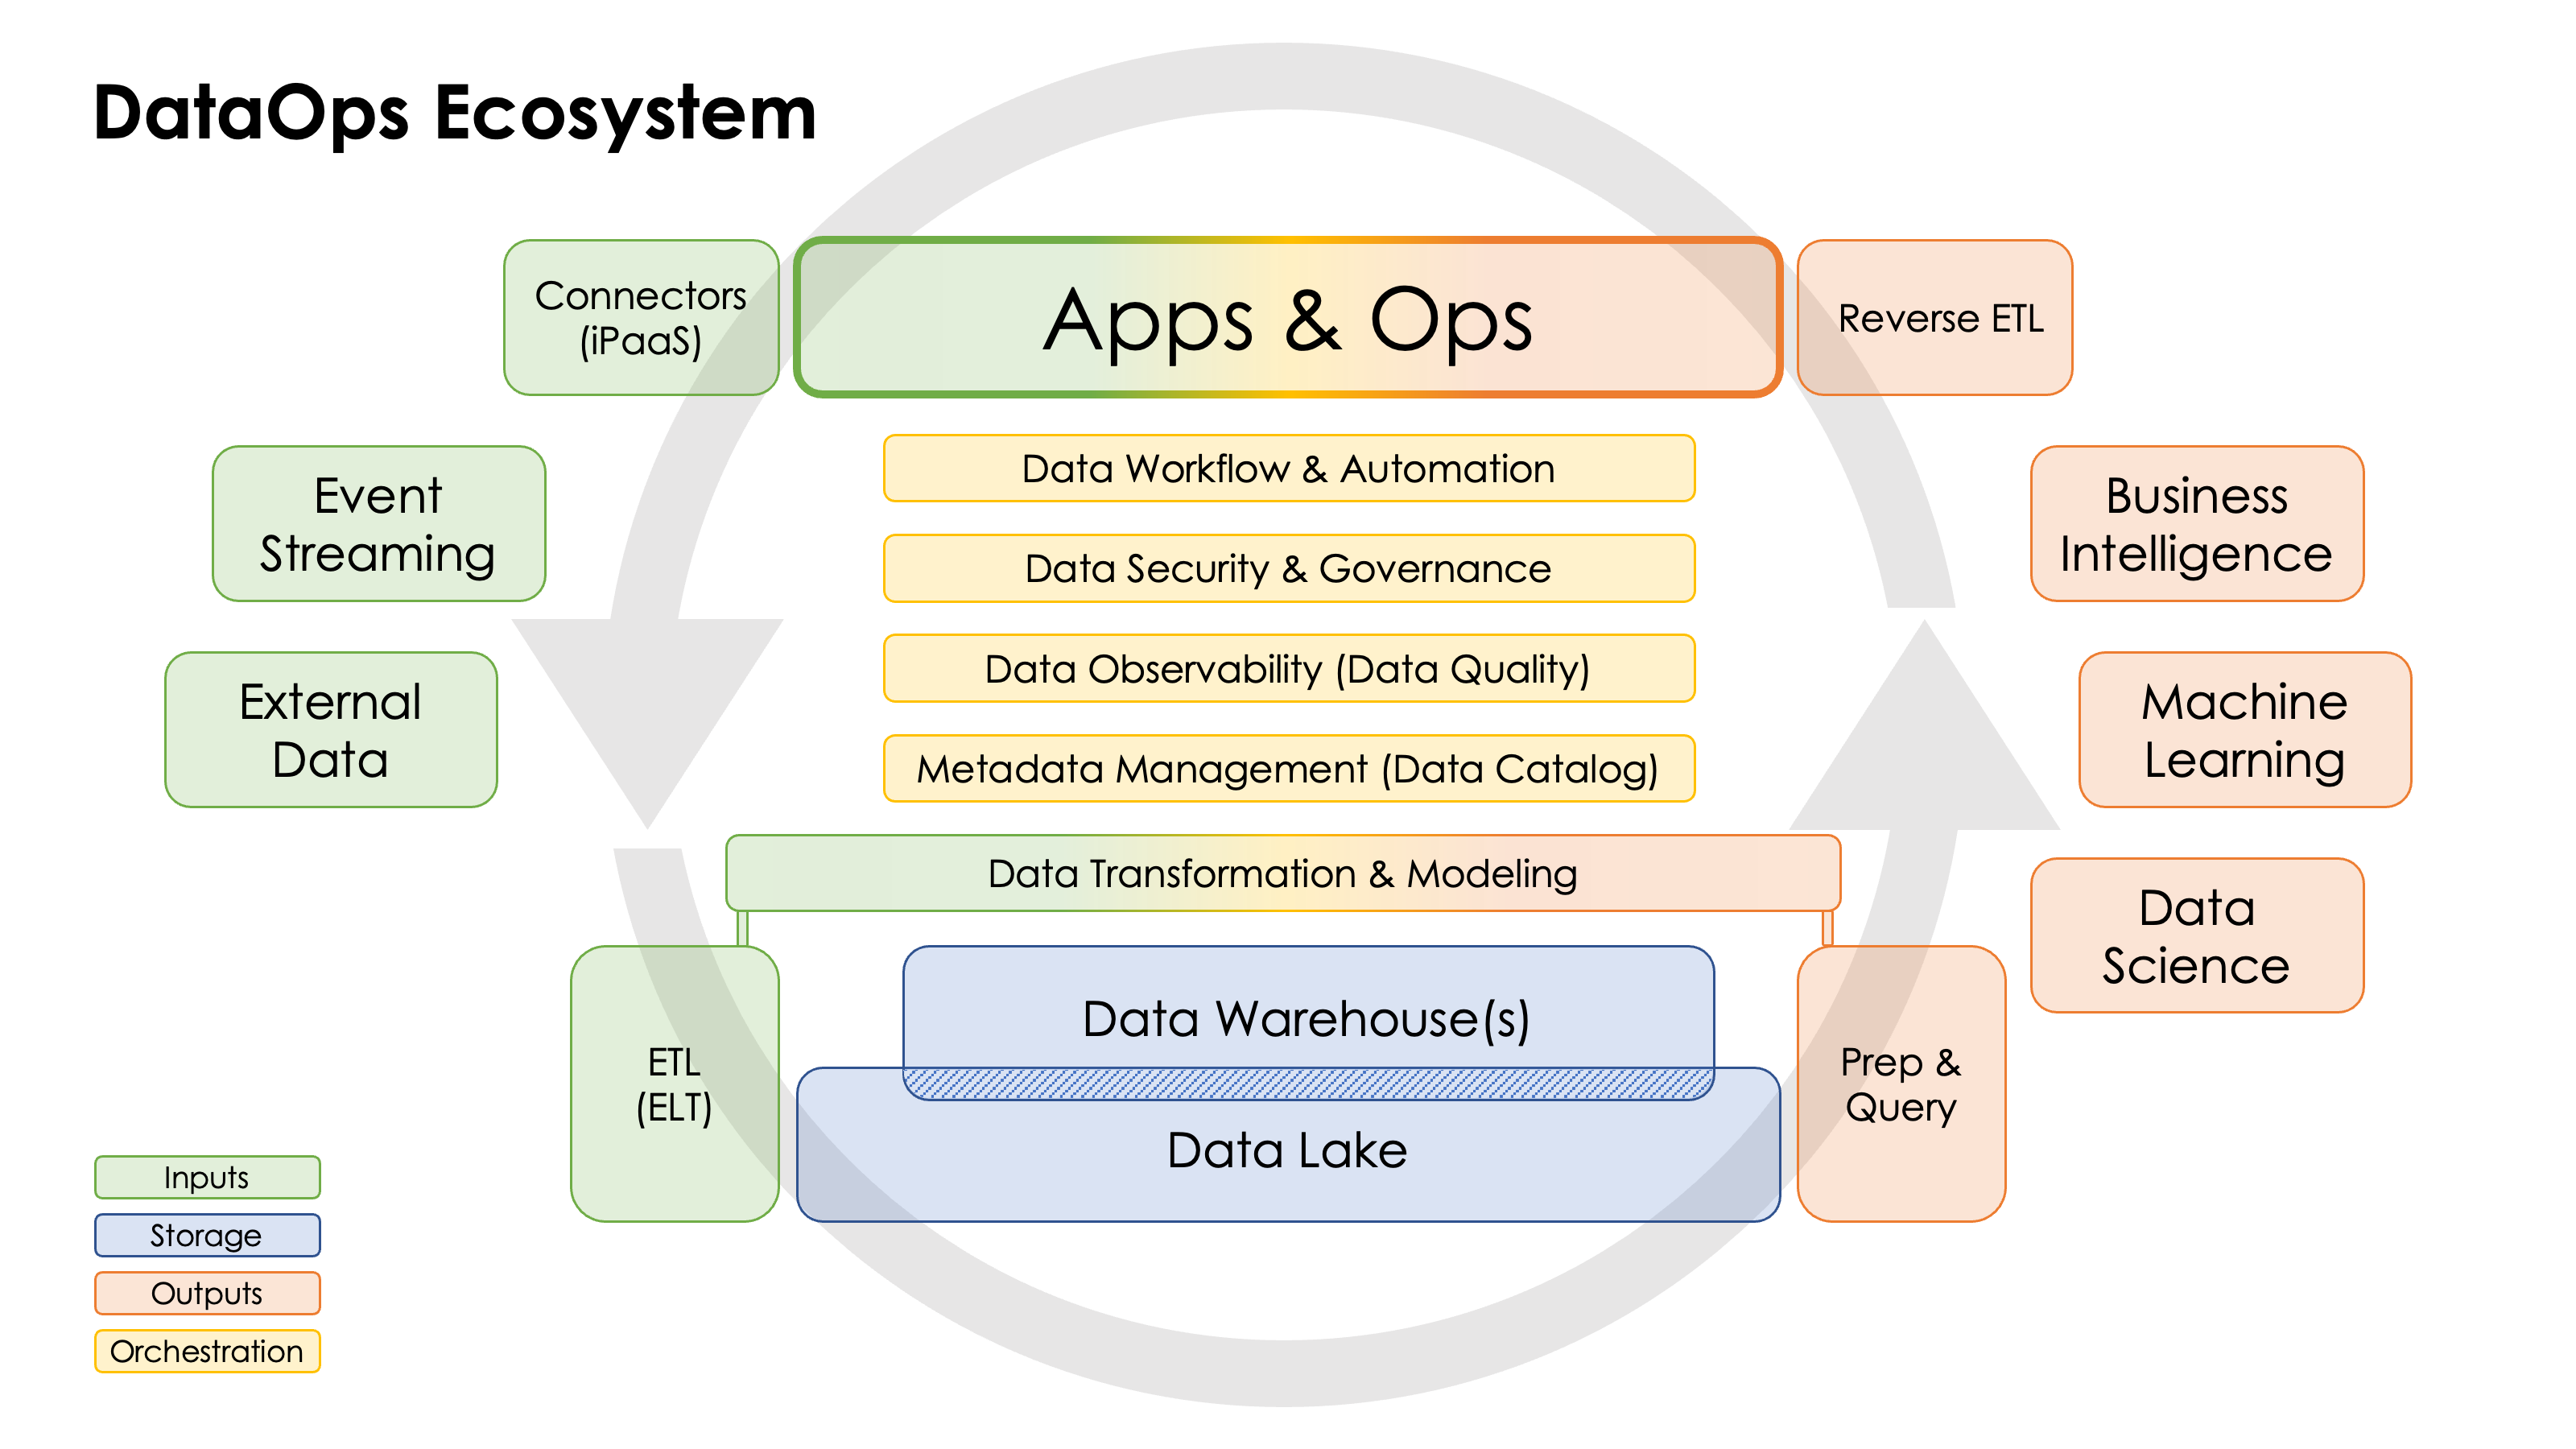 DataOps Ecosystem